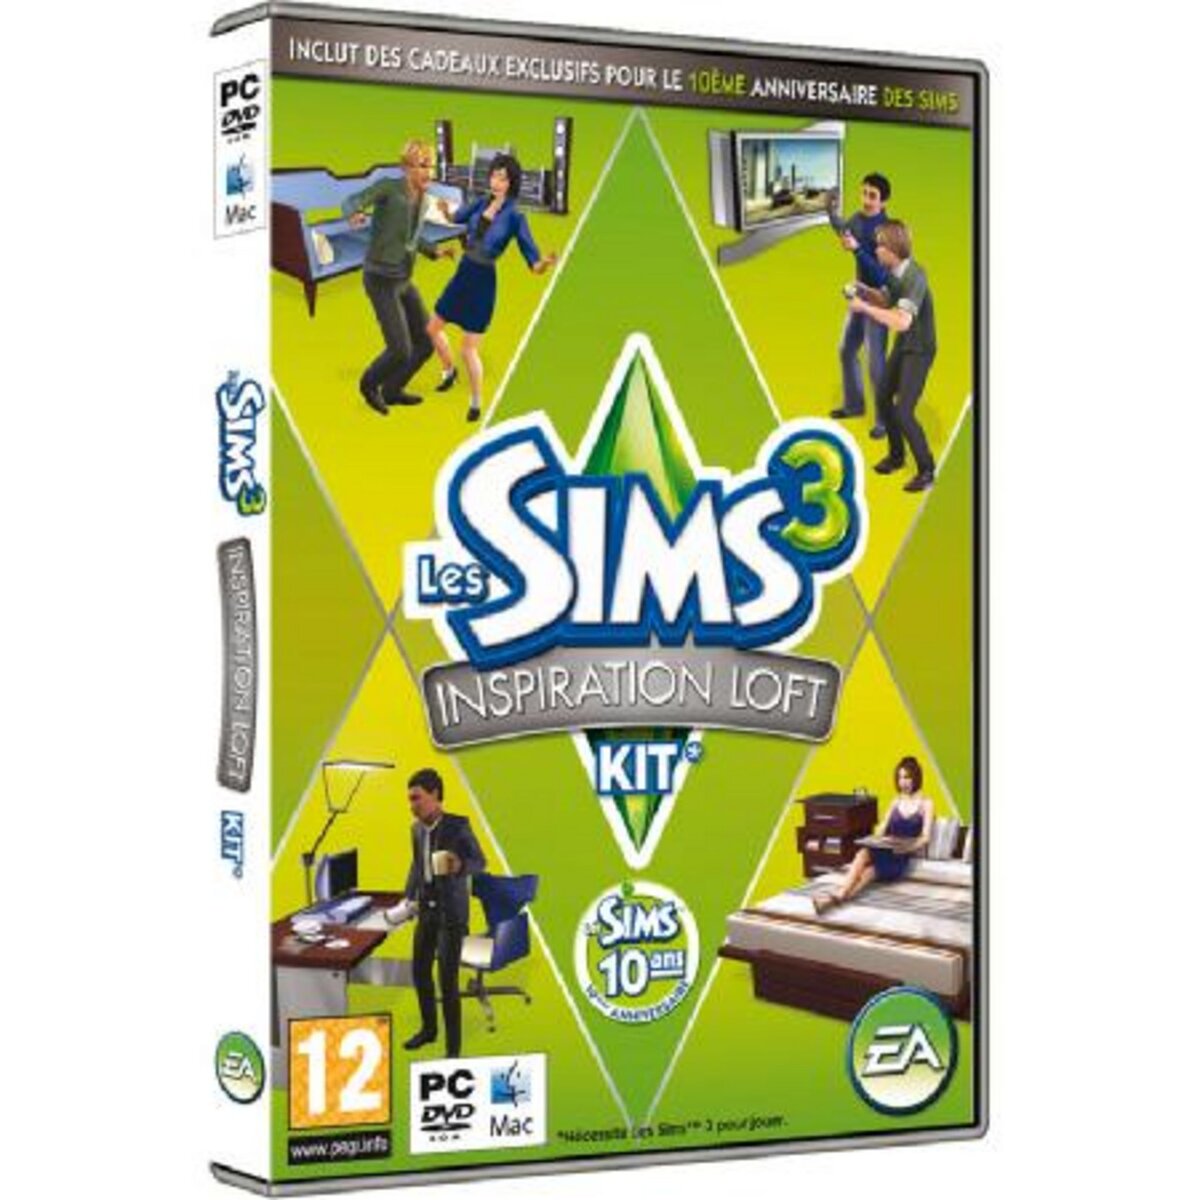 Les Sims 3 Inspiration Loft